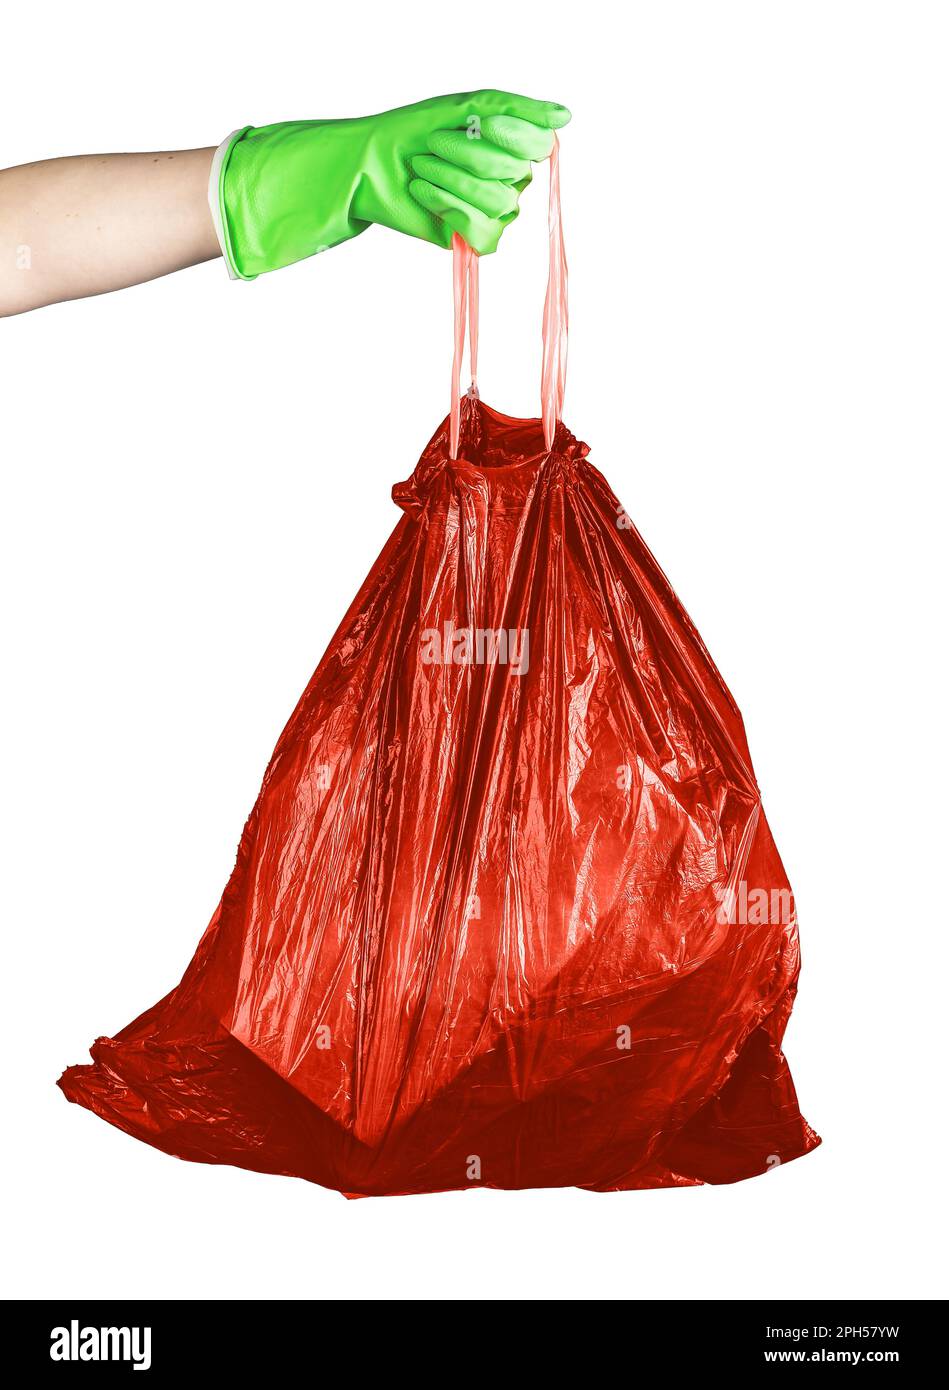 Sac poubelle rouge avec déchets non recyclables, sac poubelle plein de déchets dangereux isolé sur fond blanc. Banque D'Images